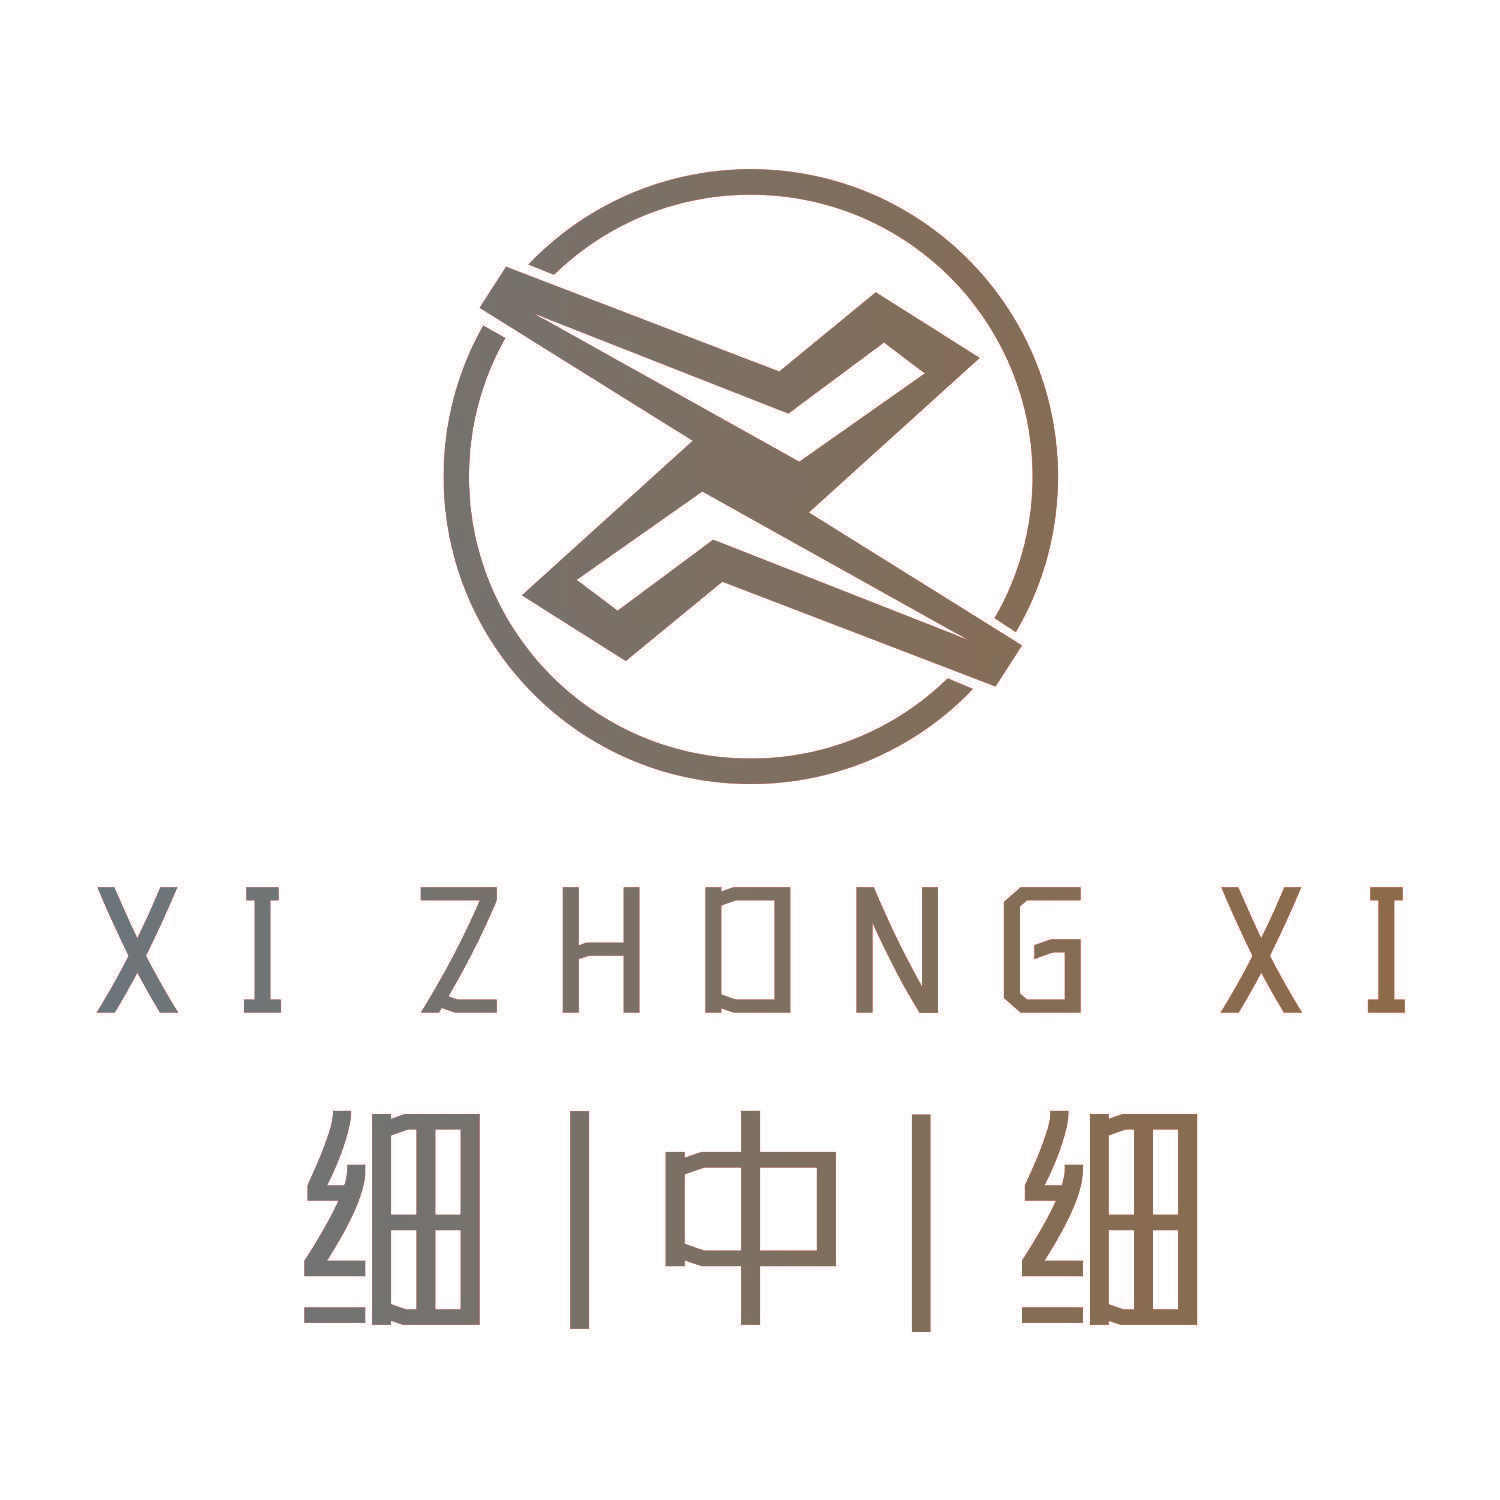 XI ZHONG XI 细中细